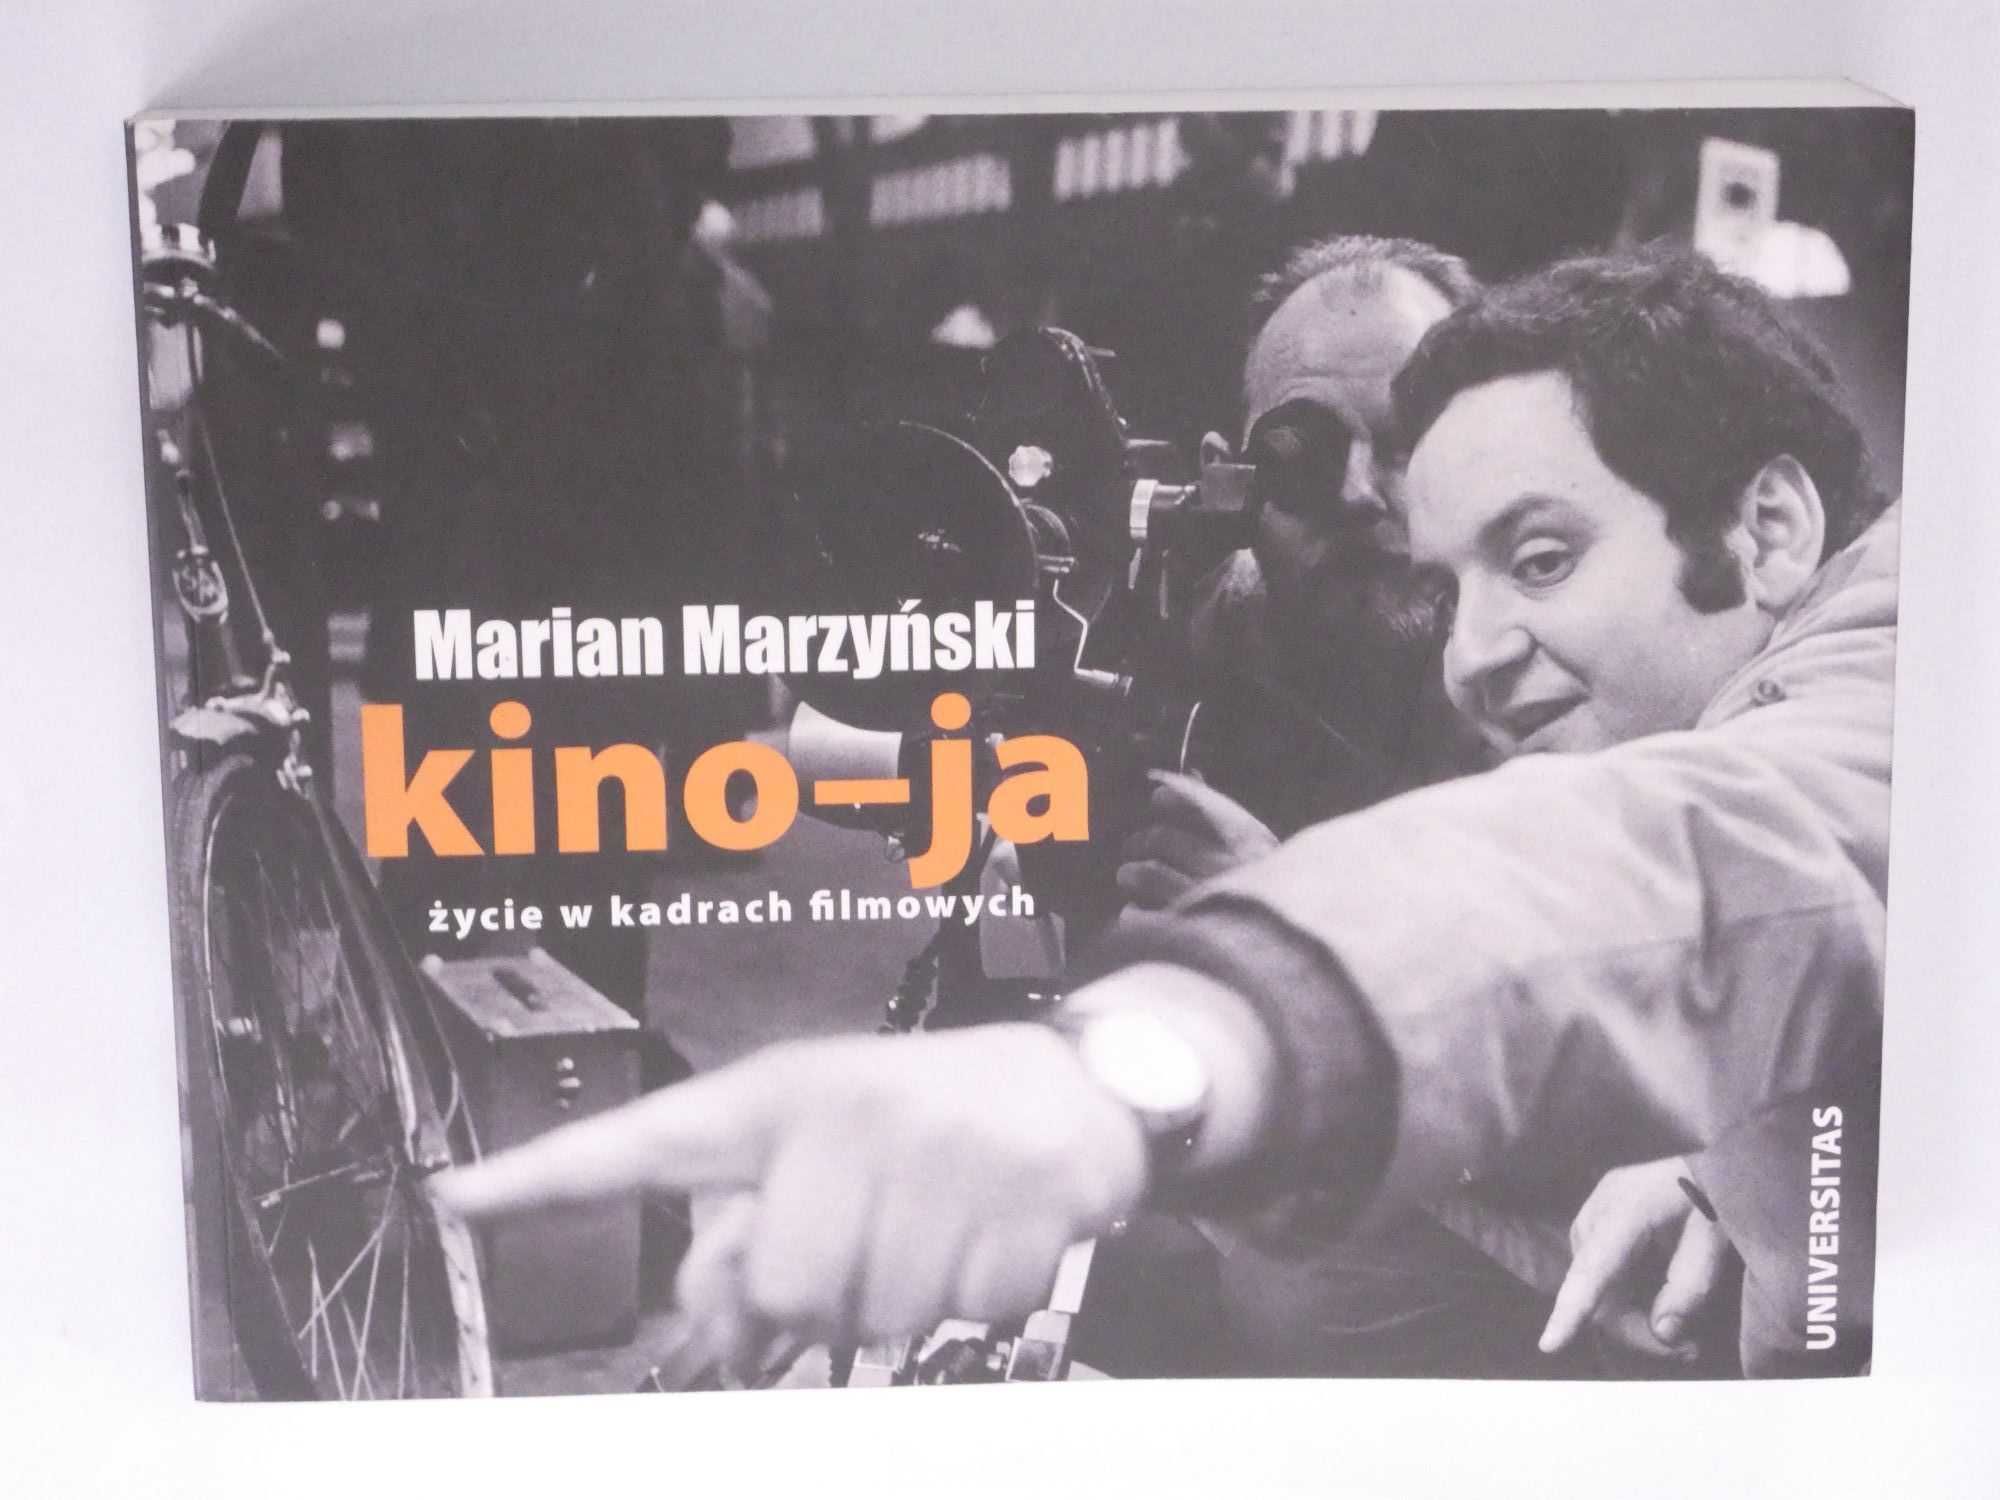 Kino-ja Marzyński